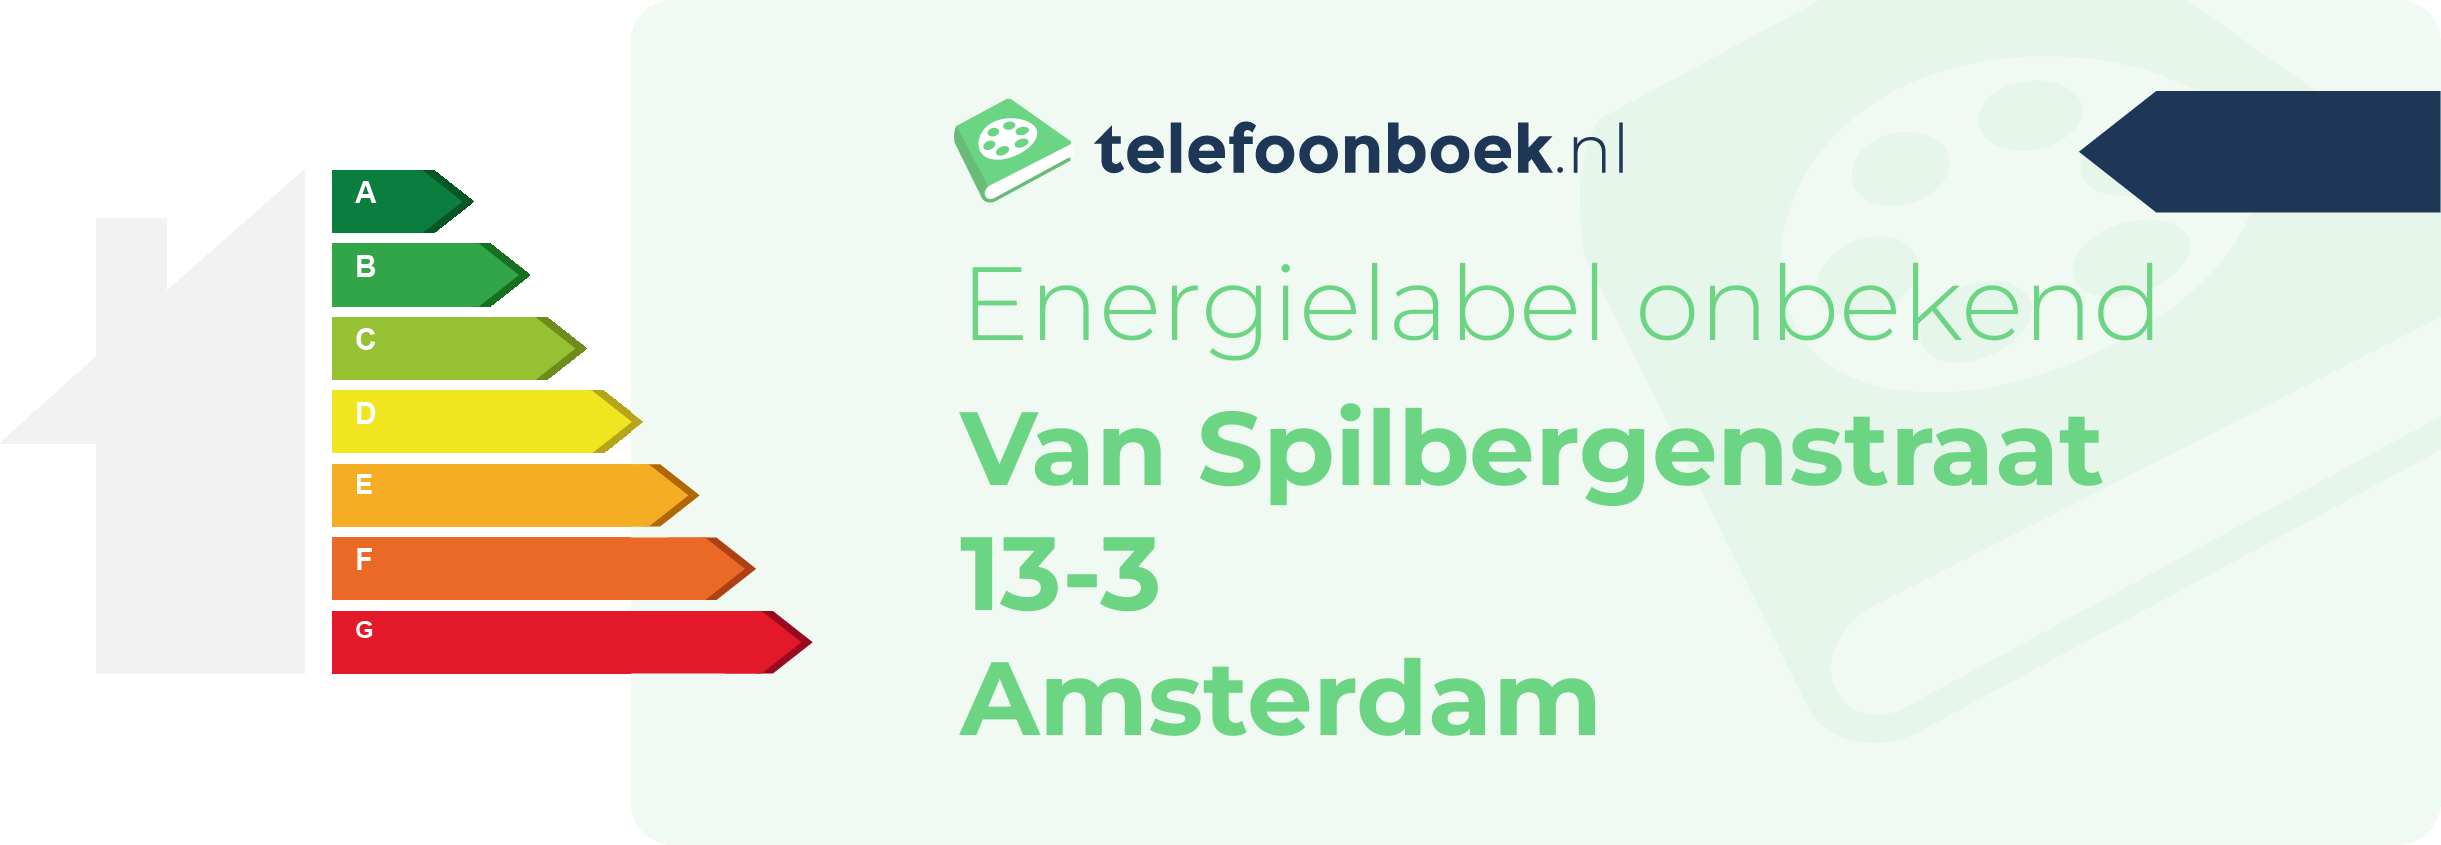 Energielabel Van Spilbergenstraat 13-3 Amsterdam